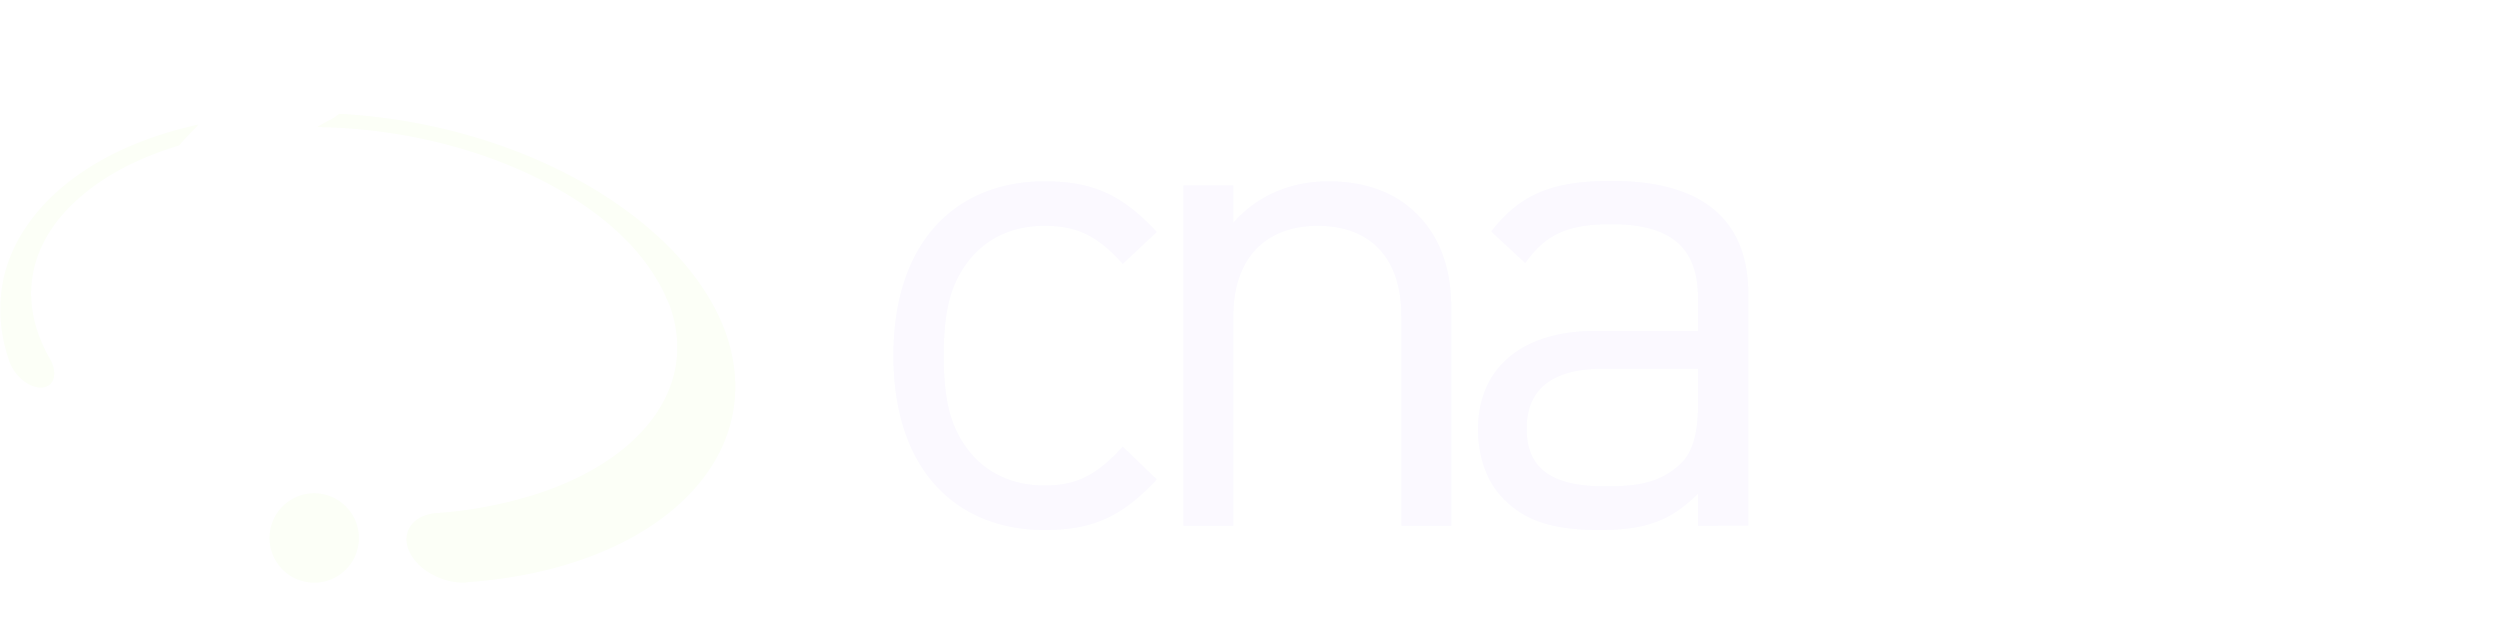 Canadian Nuclear-Association CNA